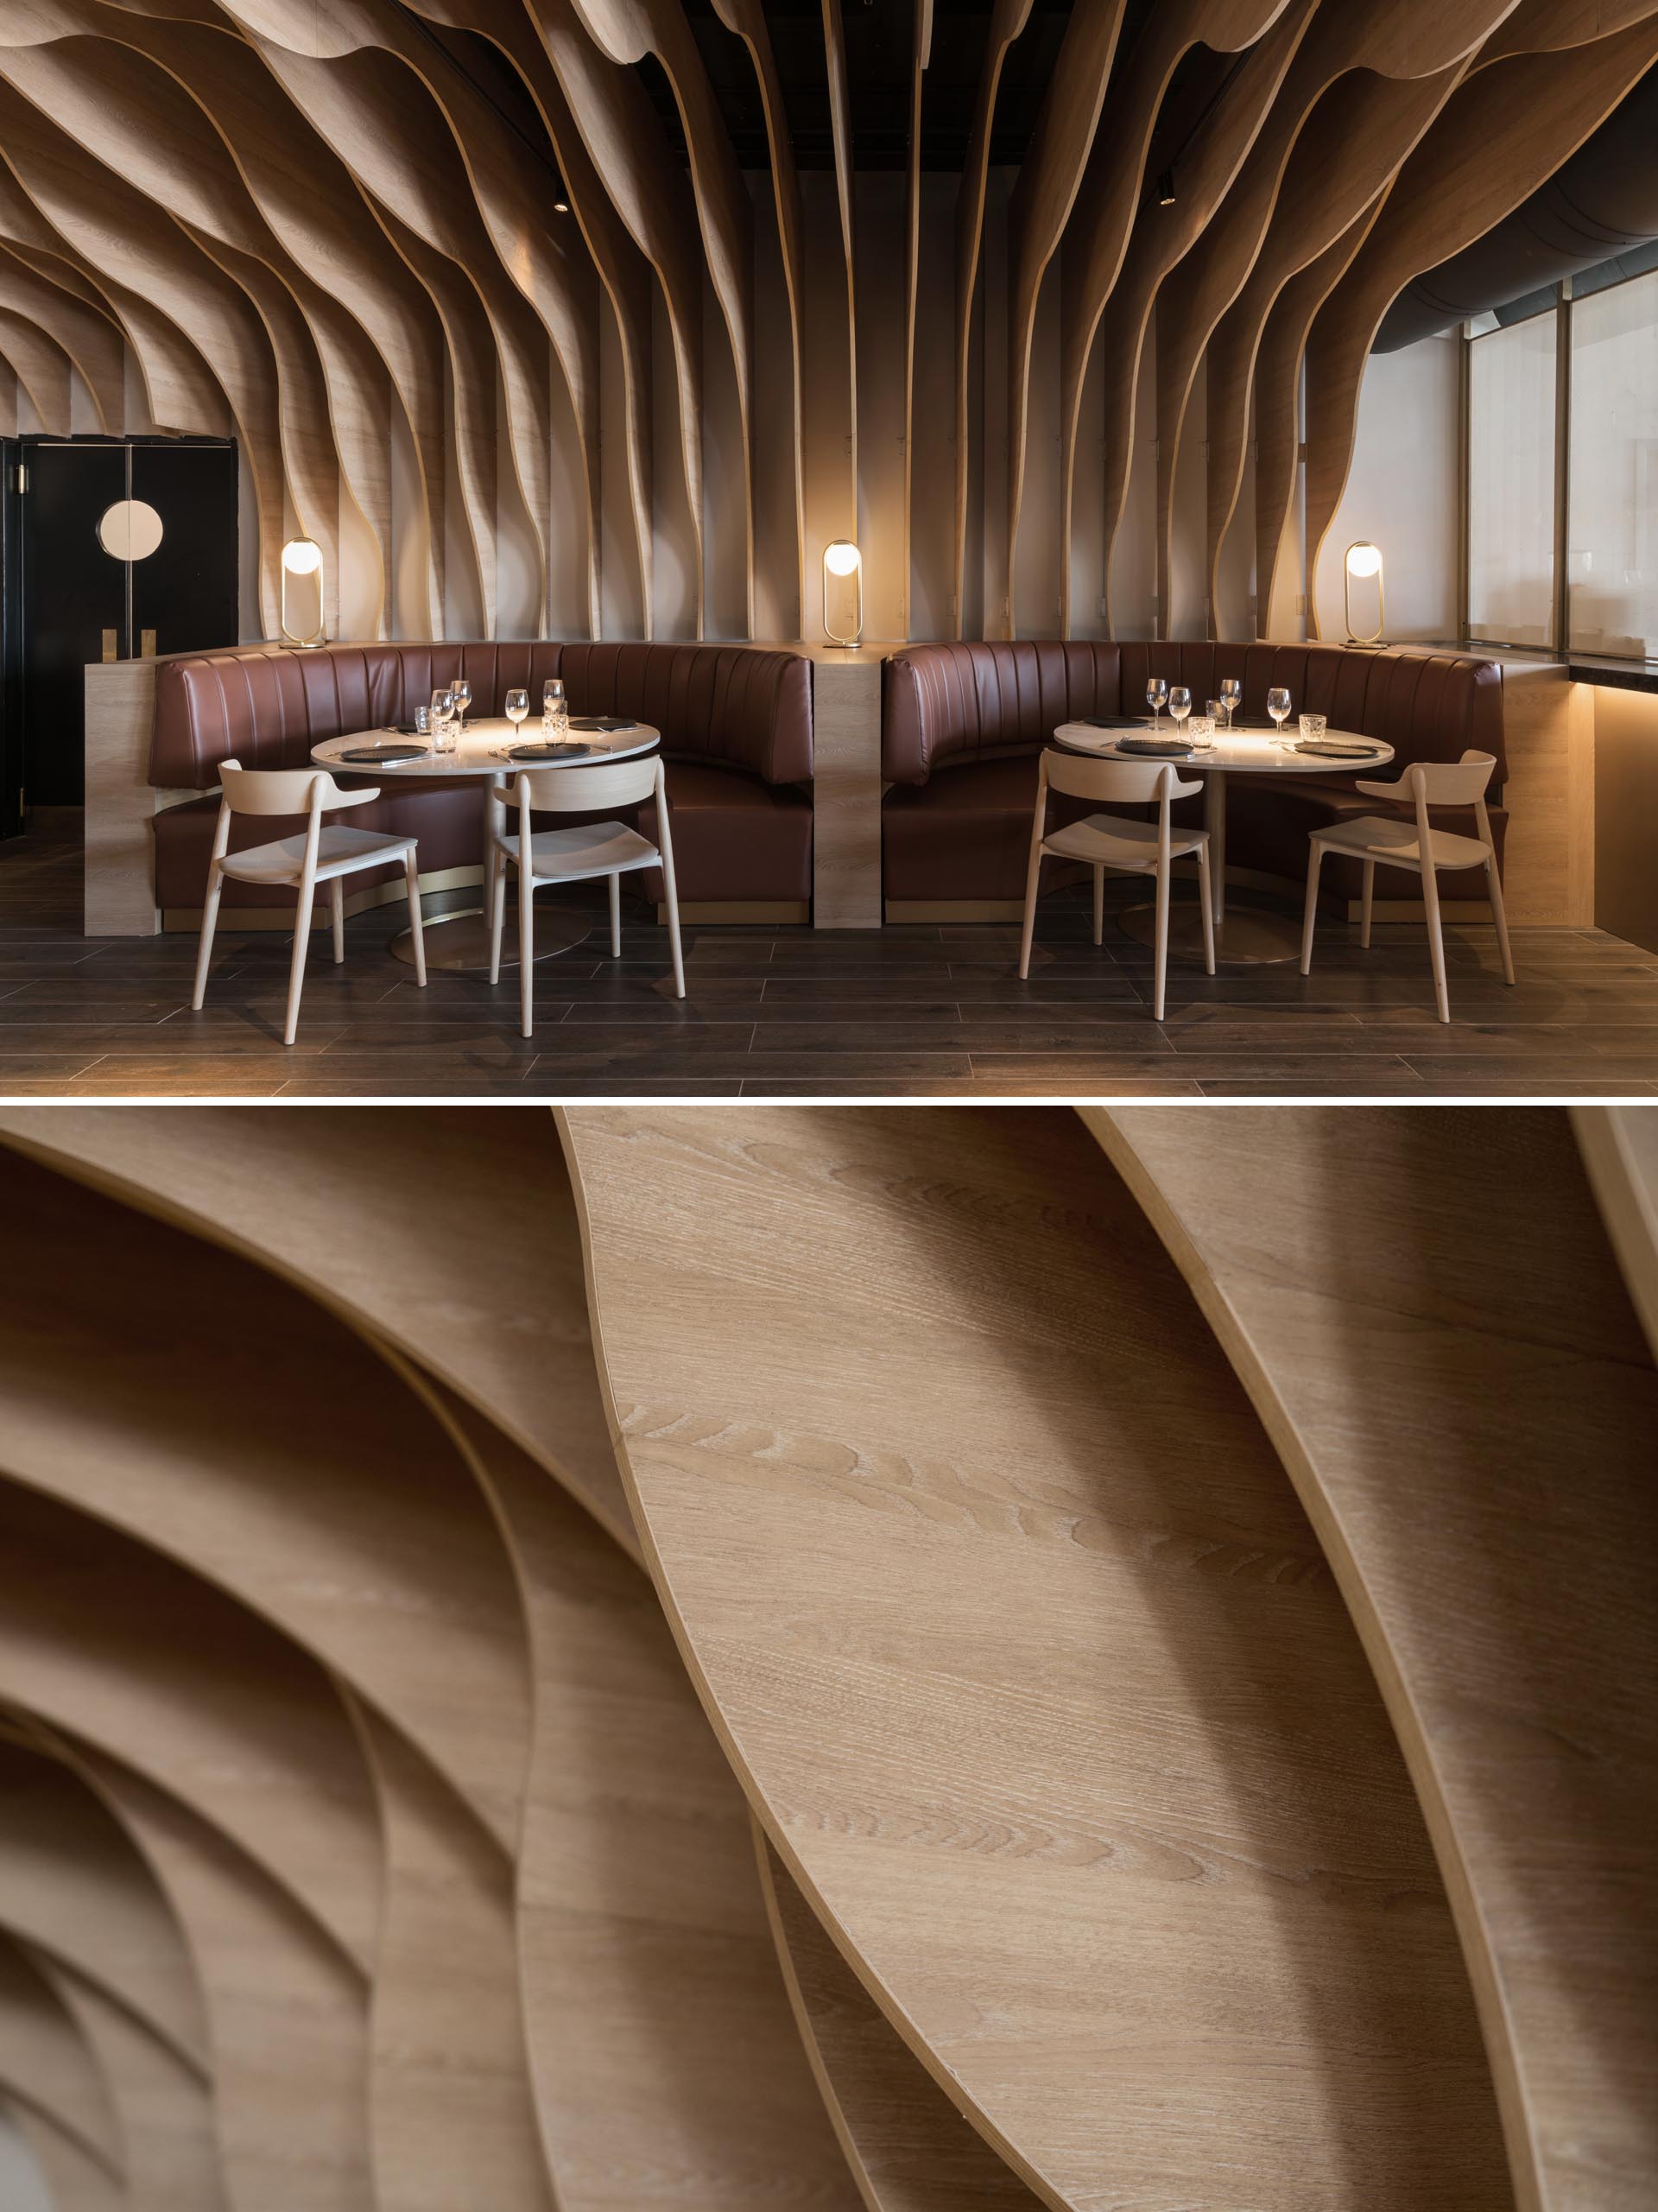 Современный ресторан со скульптурными деревянными ребрами, которые покрывают стены и потолок и гармонируют с окружающей мебелью и банкетками.